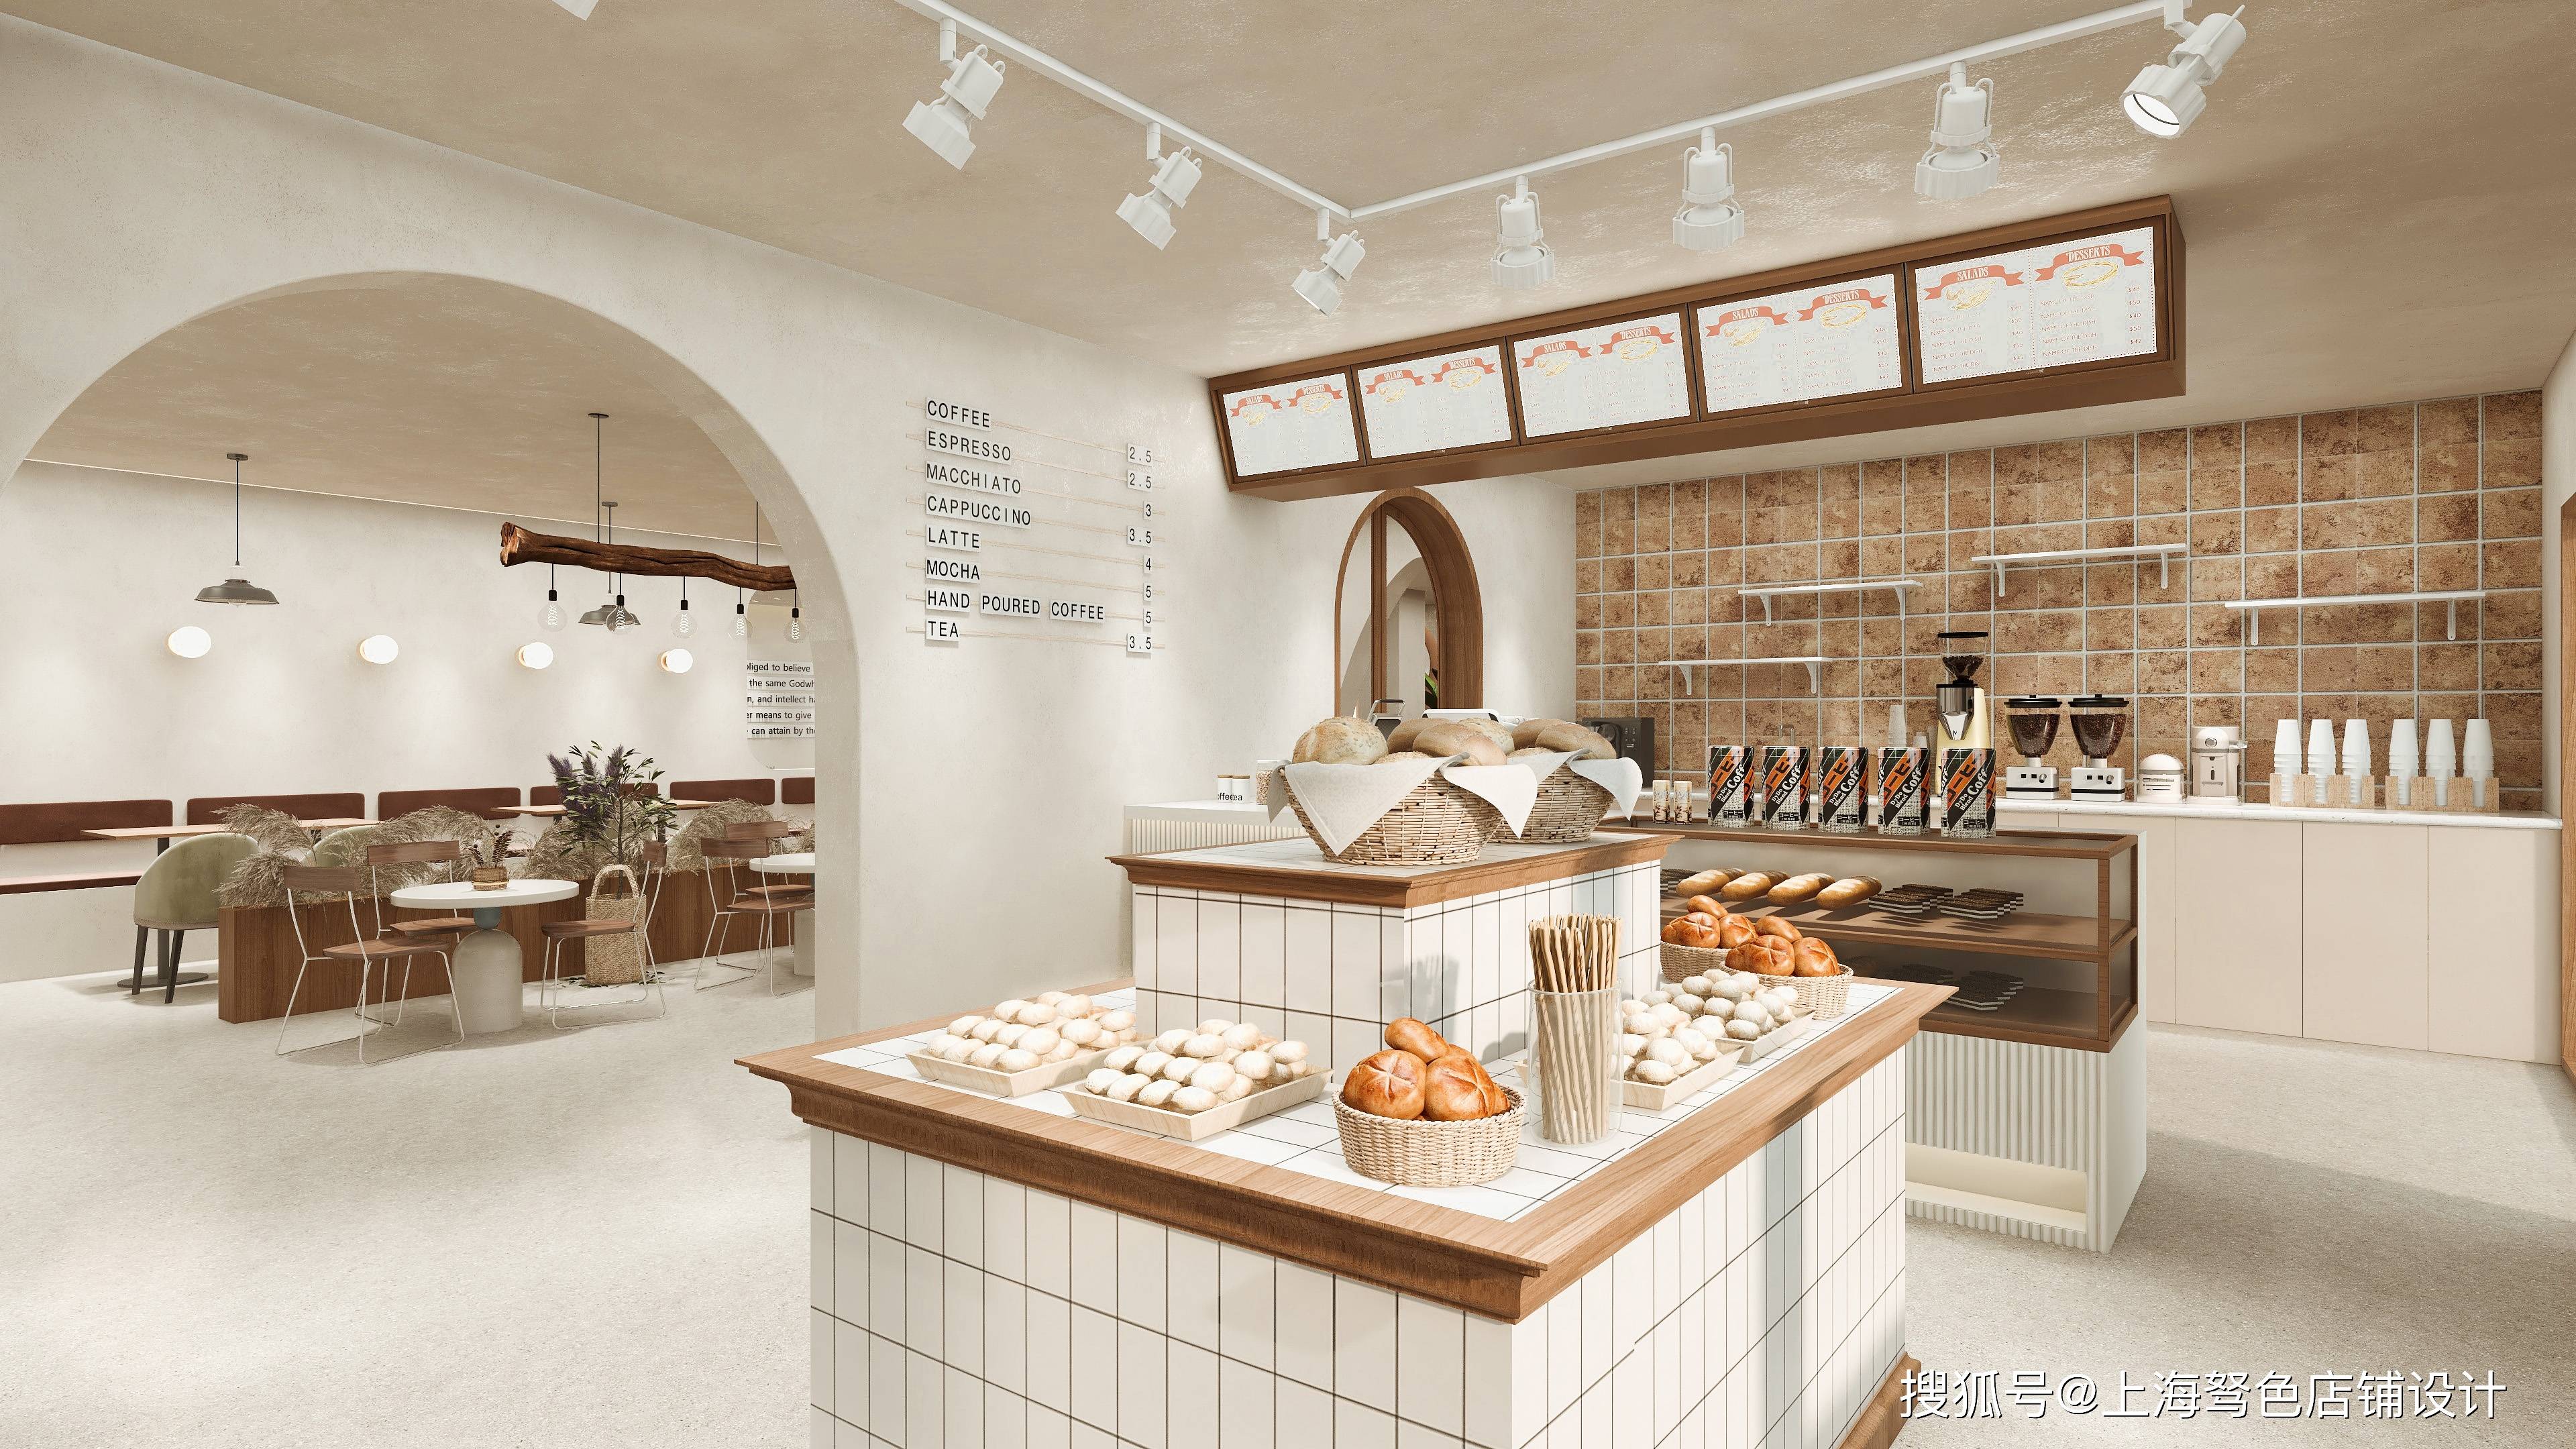 烘焙面包甜品店装修设计风格选择